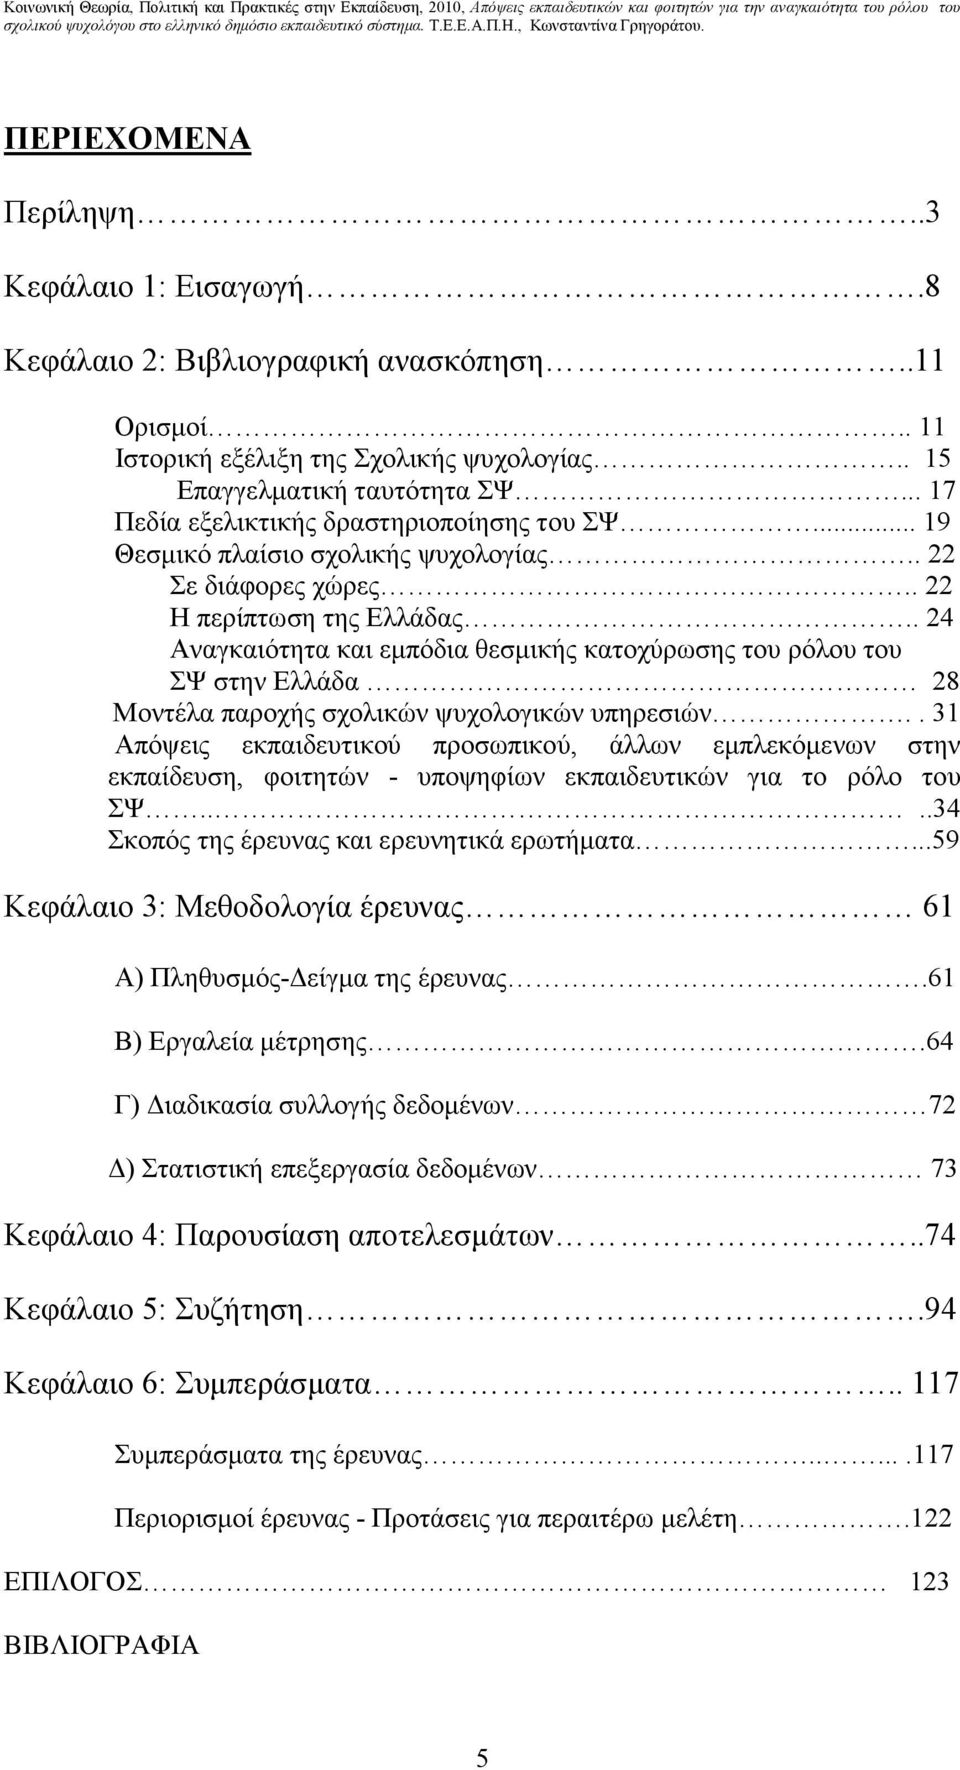 . 24 Αναγκαιότητα και εµπόδια θεσµικής κατοχύρωσης του ρόλου του ΣΨ στην Ελλάδα 28 Μοντέλα παροχής σχολικών ψυχολογικών υπηρεσιών.